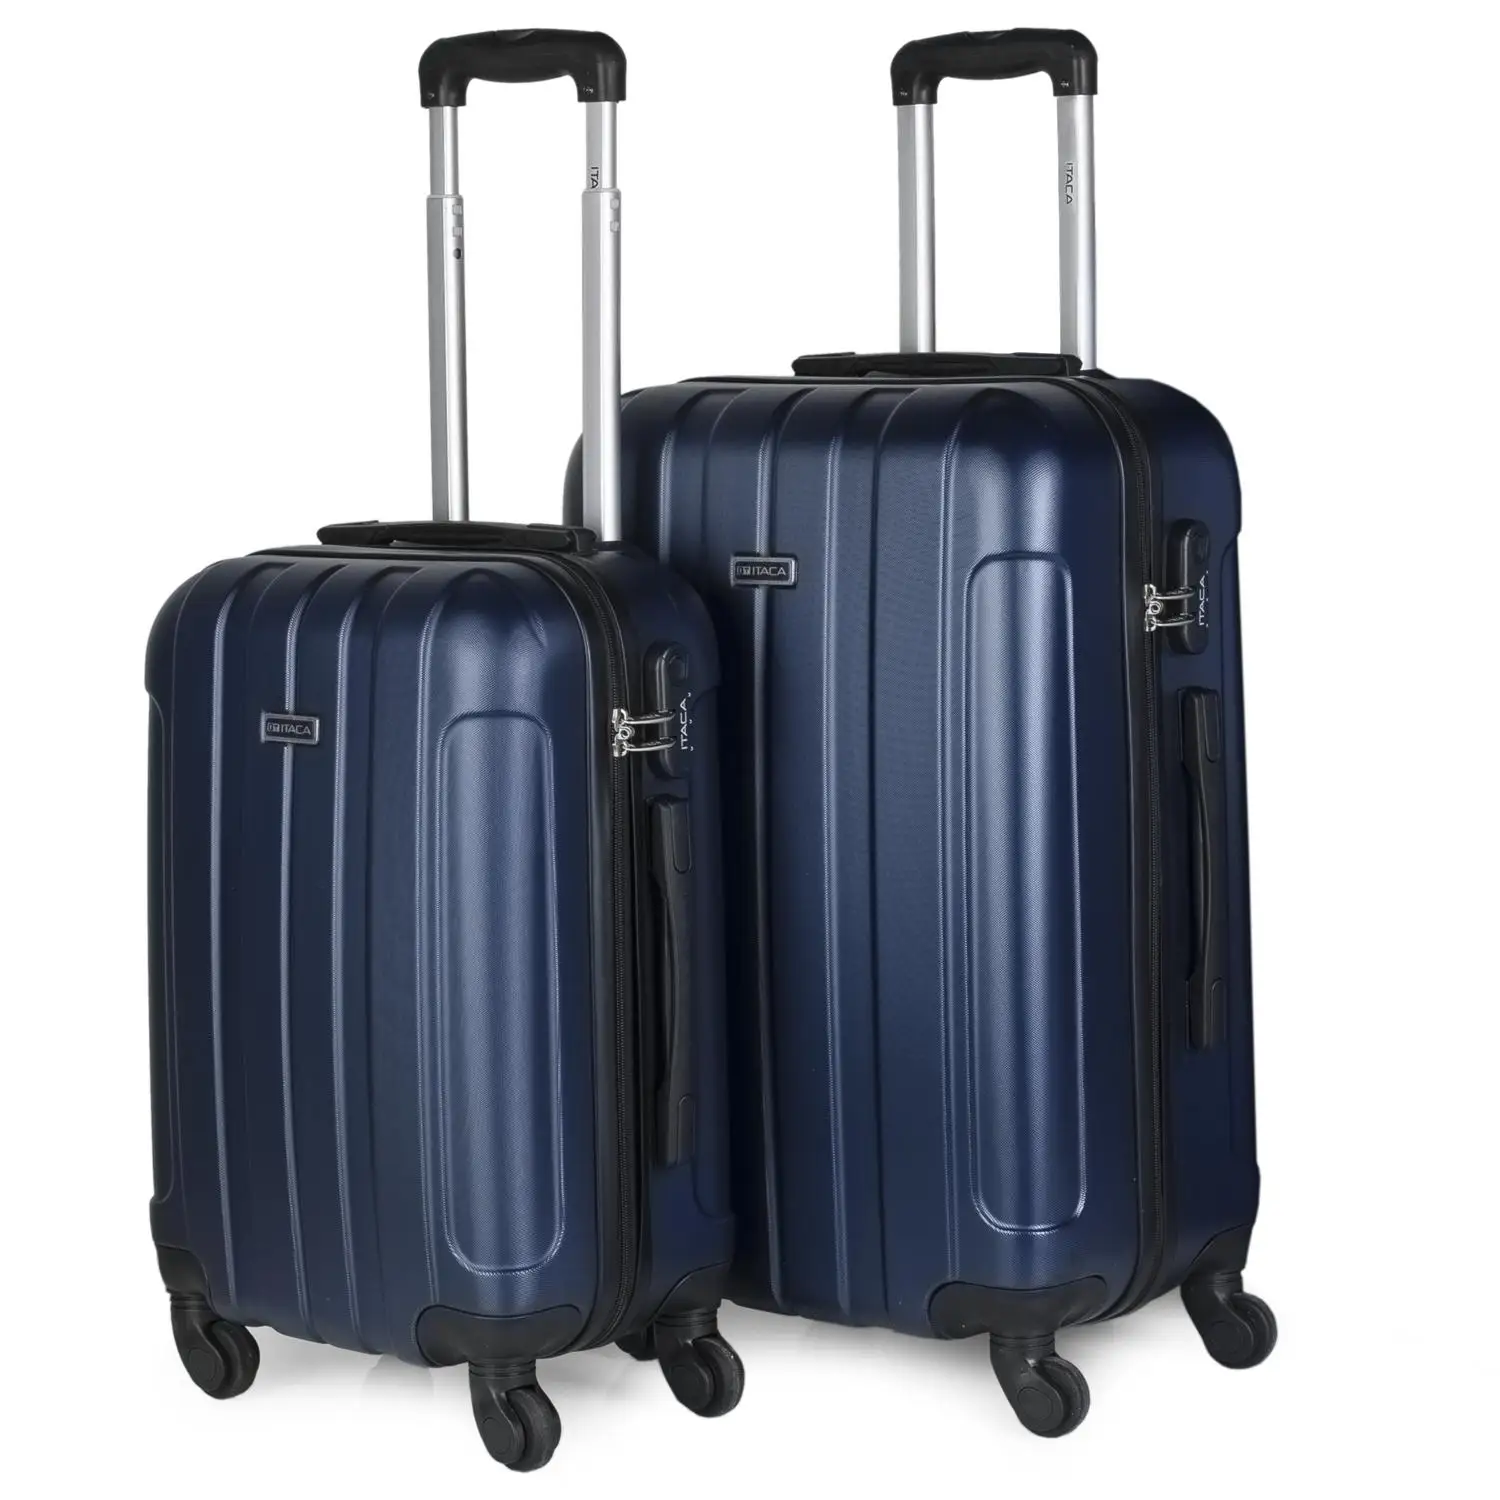 Itaca Havel juego 2 чемодана на колесиках для путешествий, жесткая 55/65 см ABS 3 цвета 771115 - Цвет: Синий